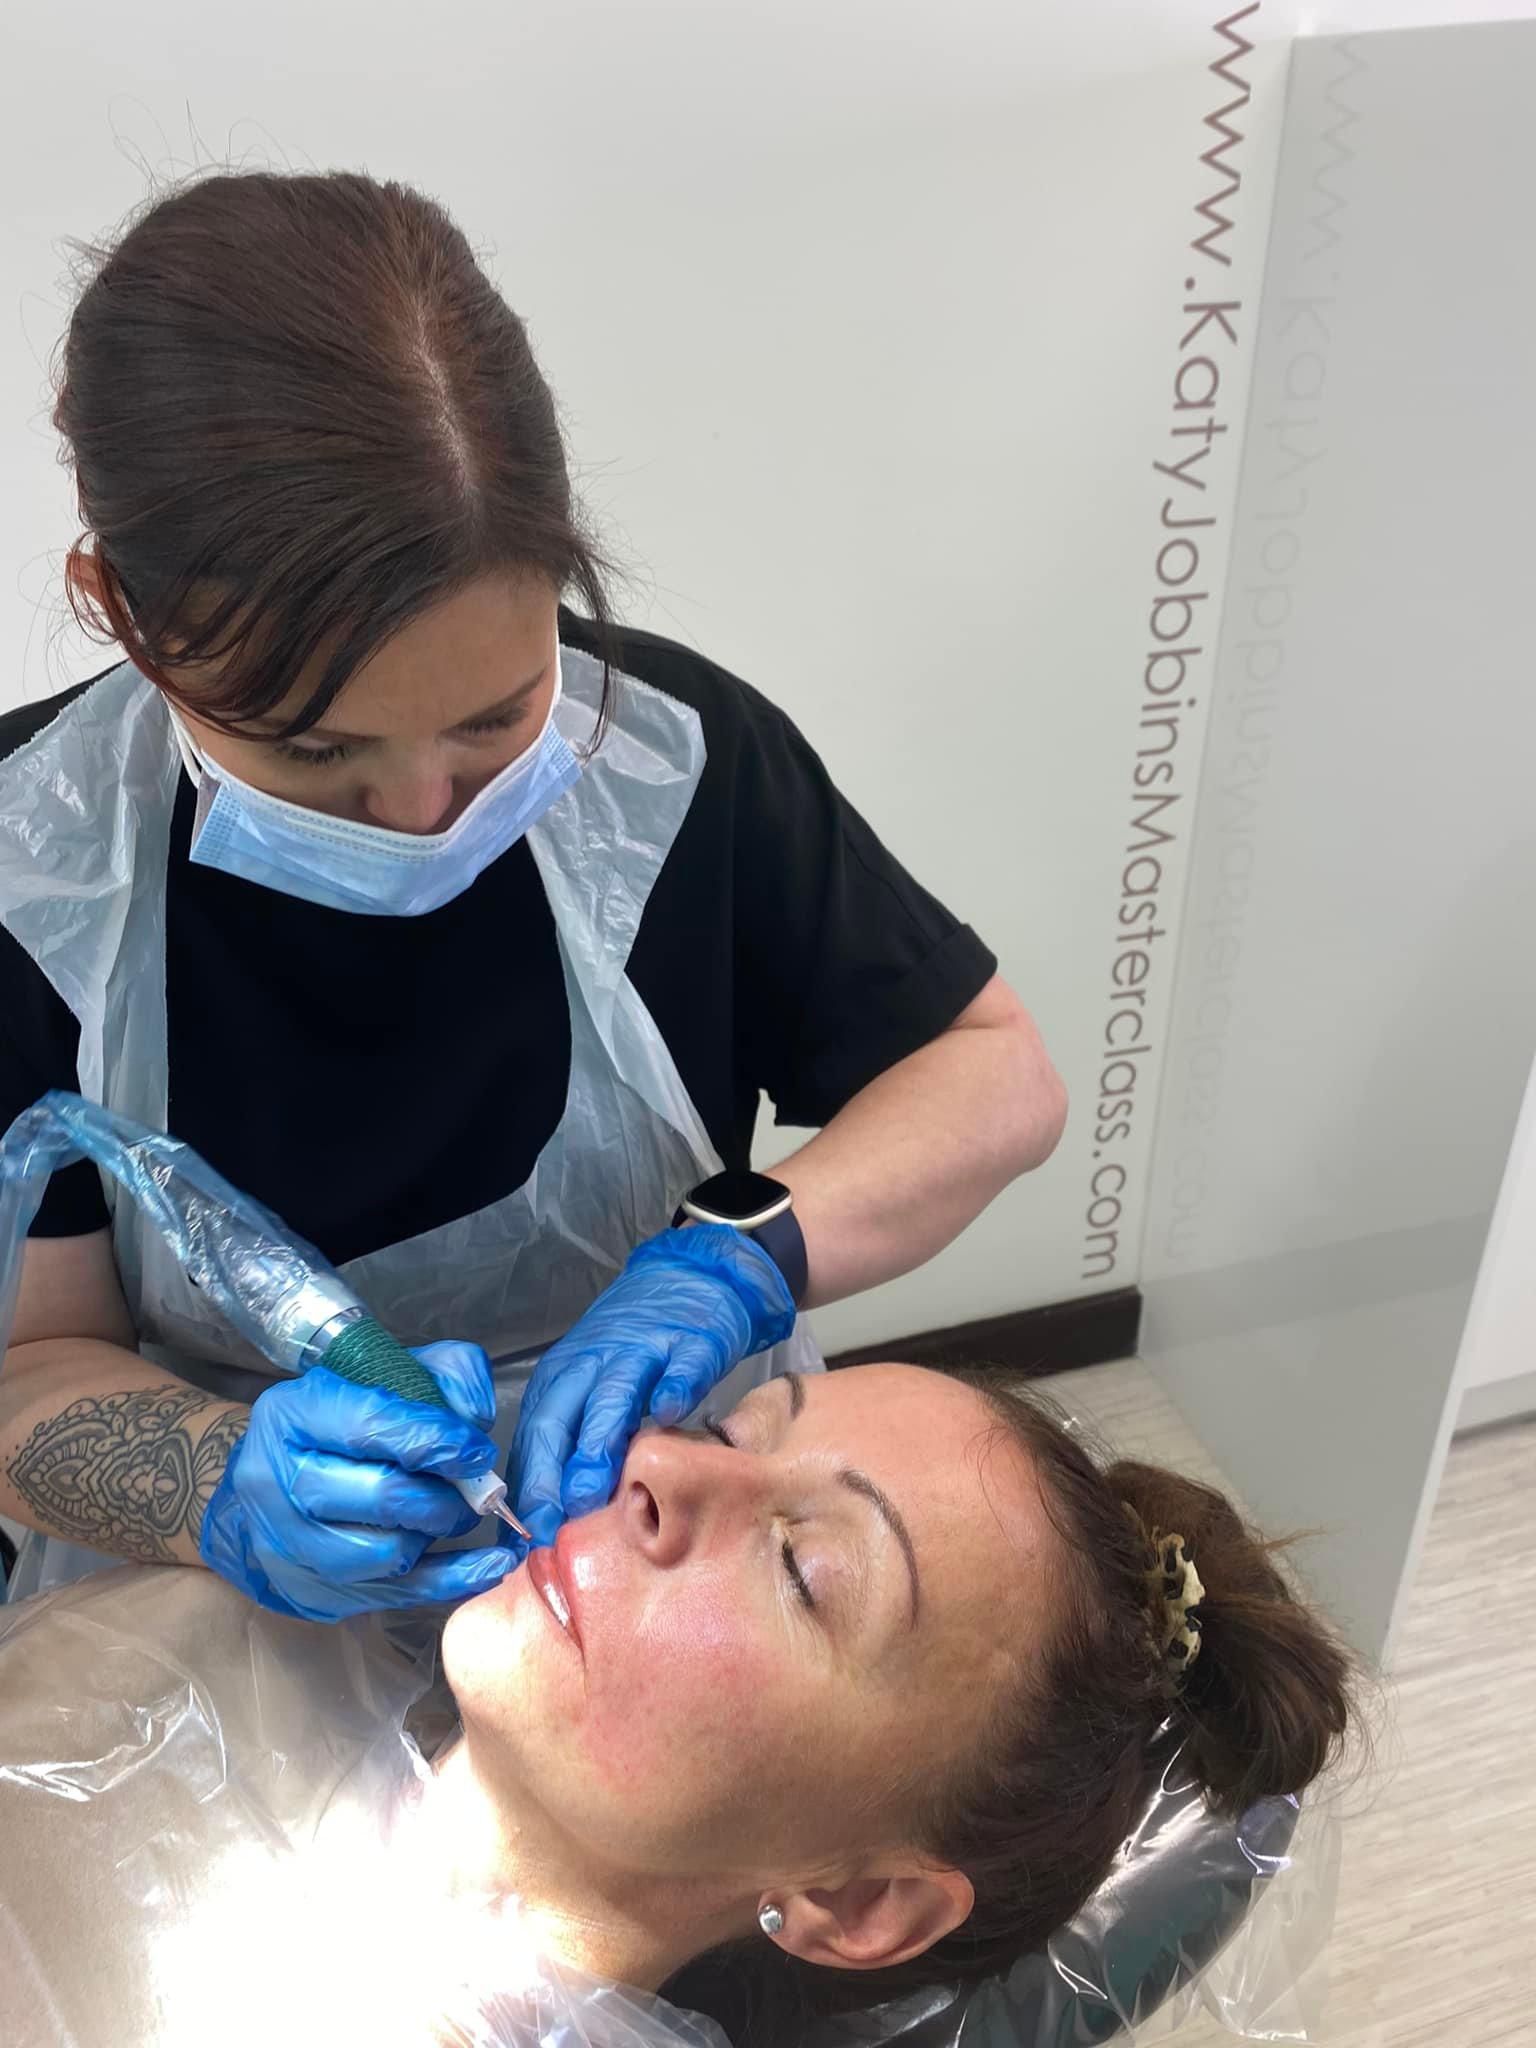 Lori-ann tattooing a clients lips